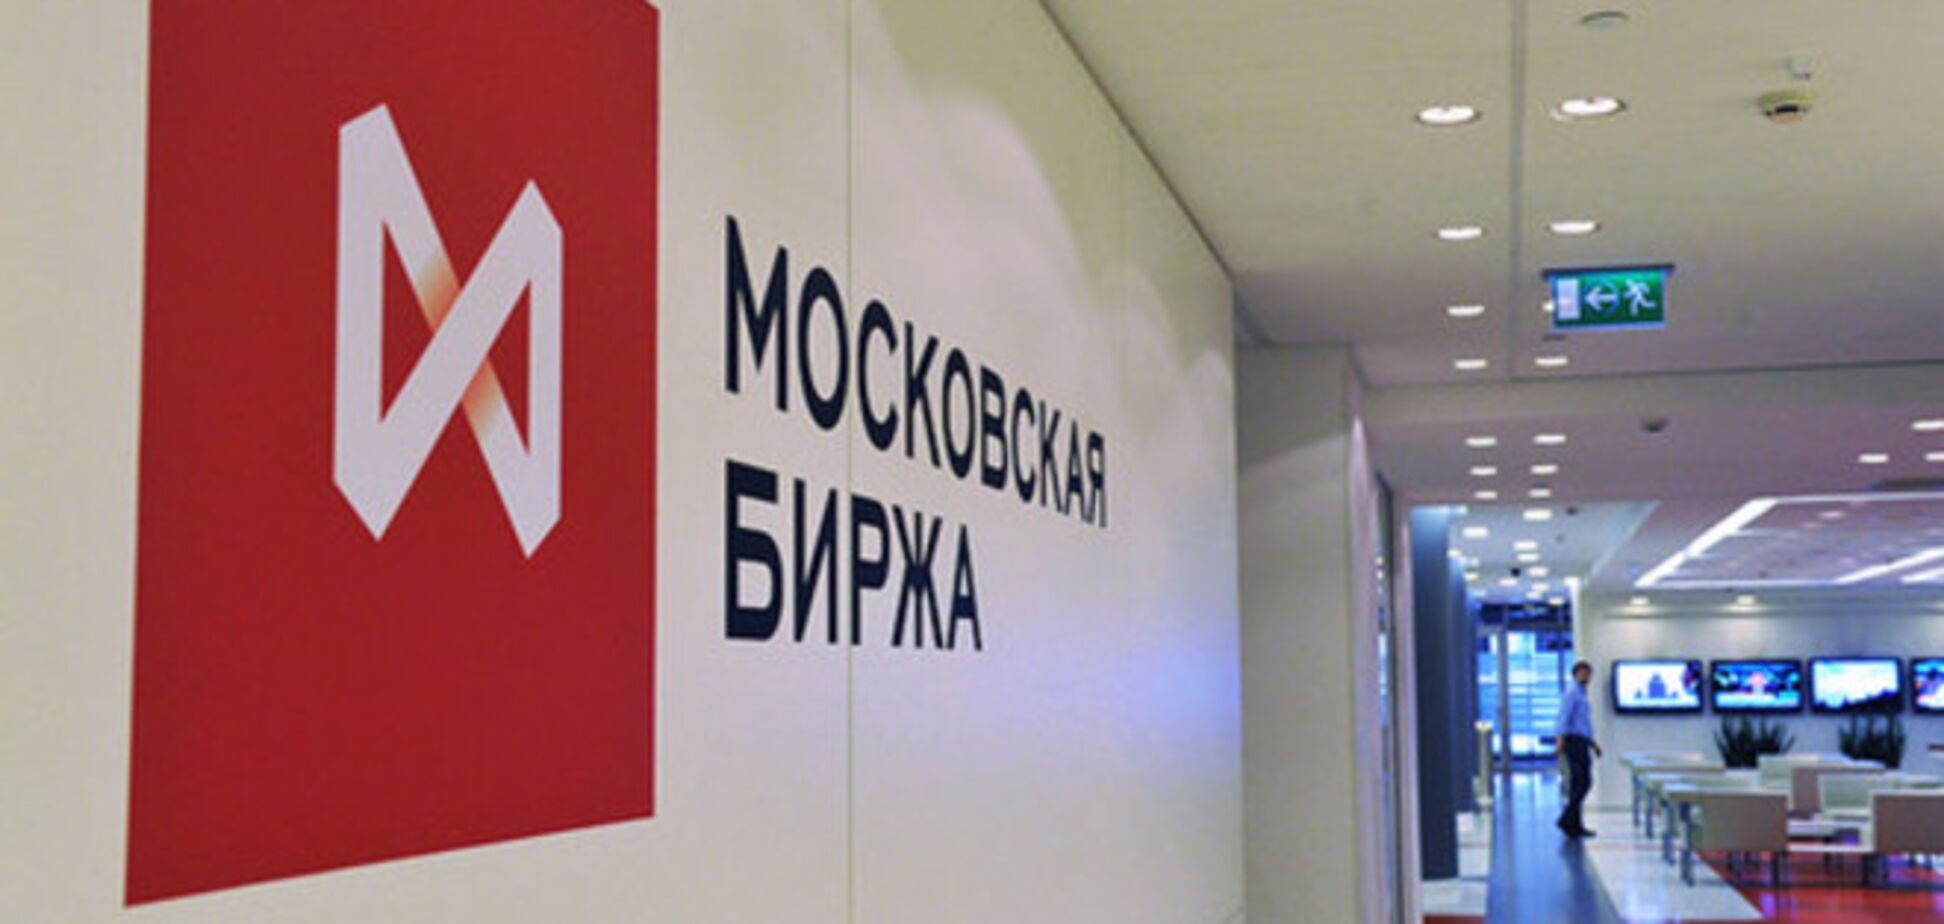 Топ-менеджер из Киева уволился с Московской биржи из-за личной позиции по Украине